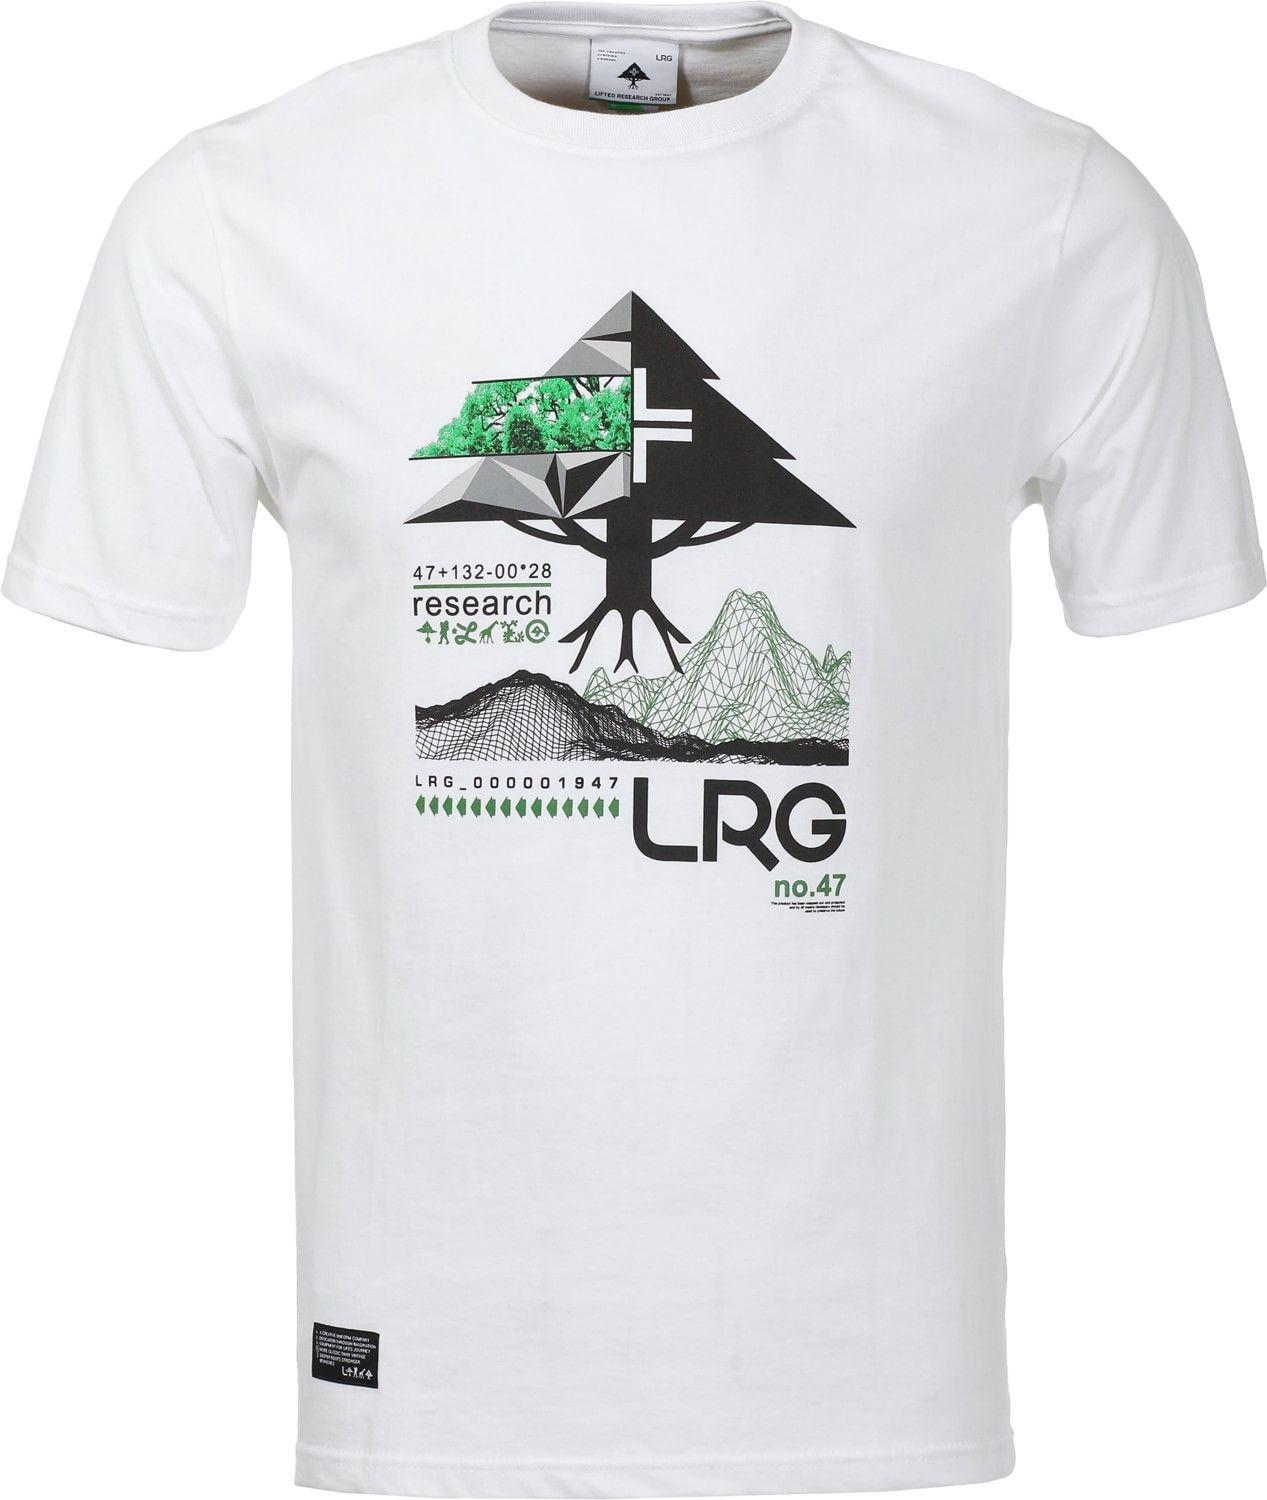 LRG Tree Logo - LRG Men Clothing: LRG Tree Tech T-Shirt with White LRG Shirts ...